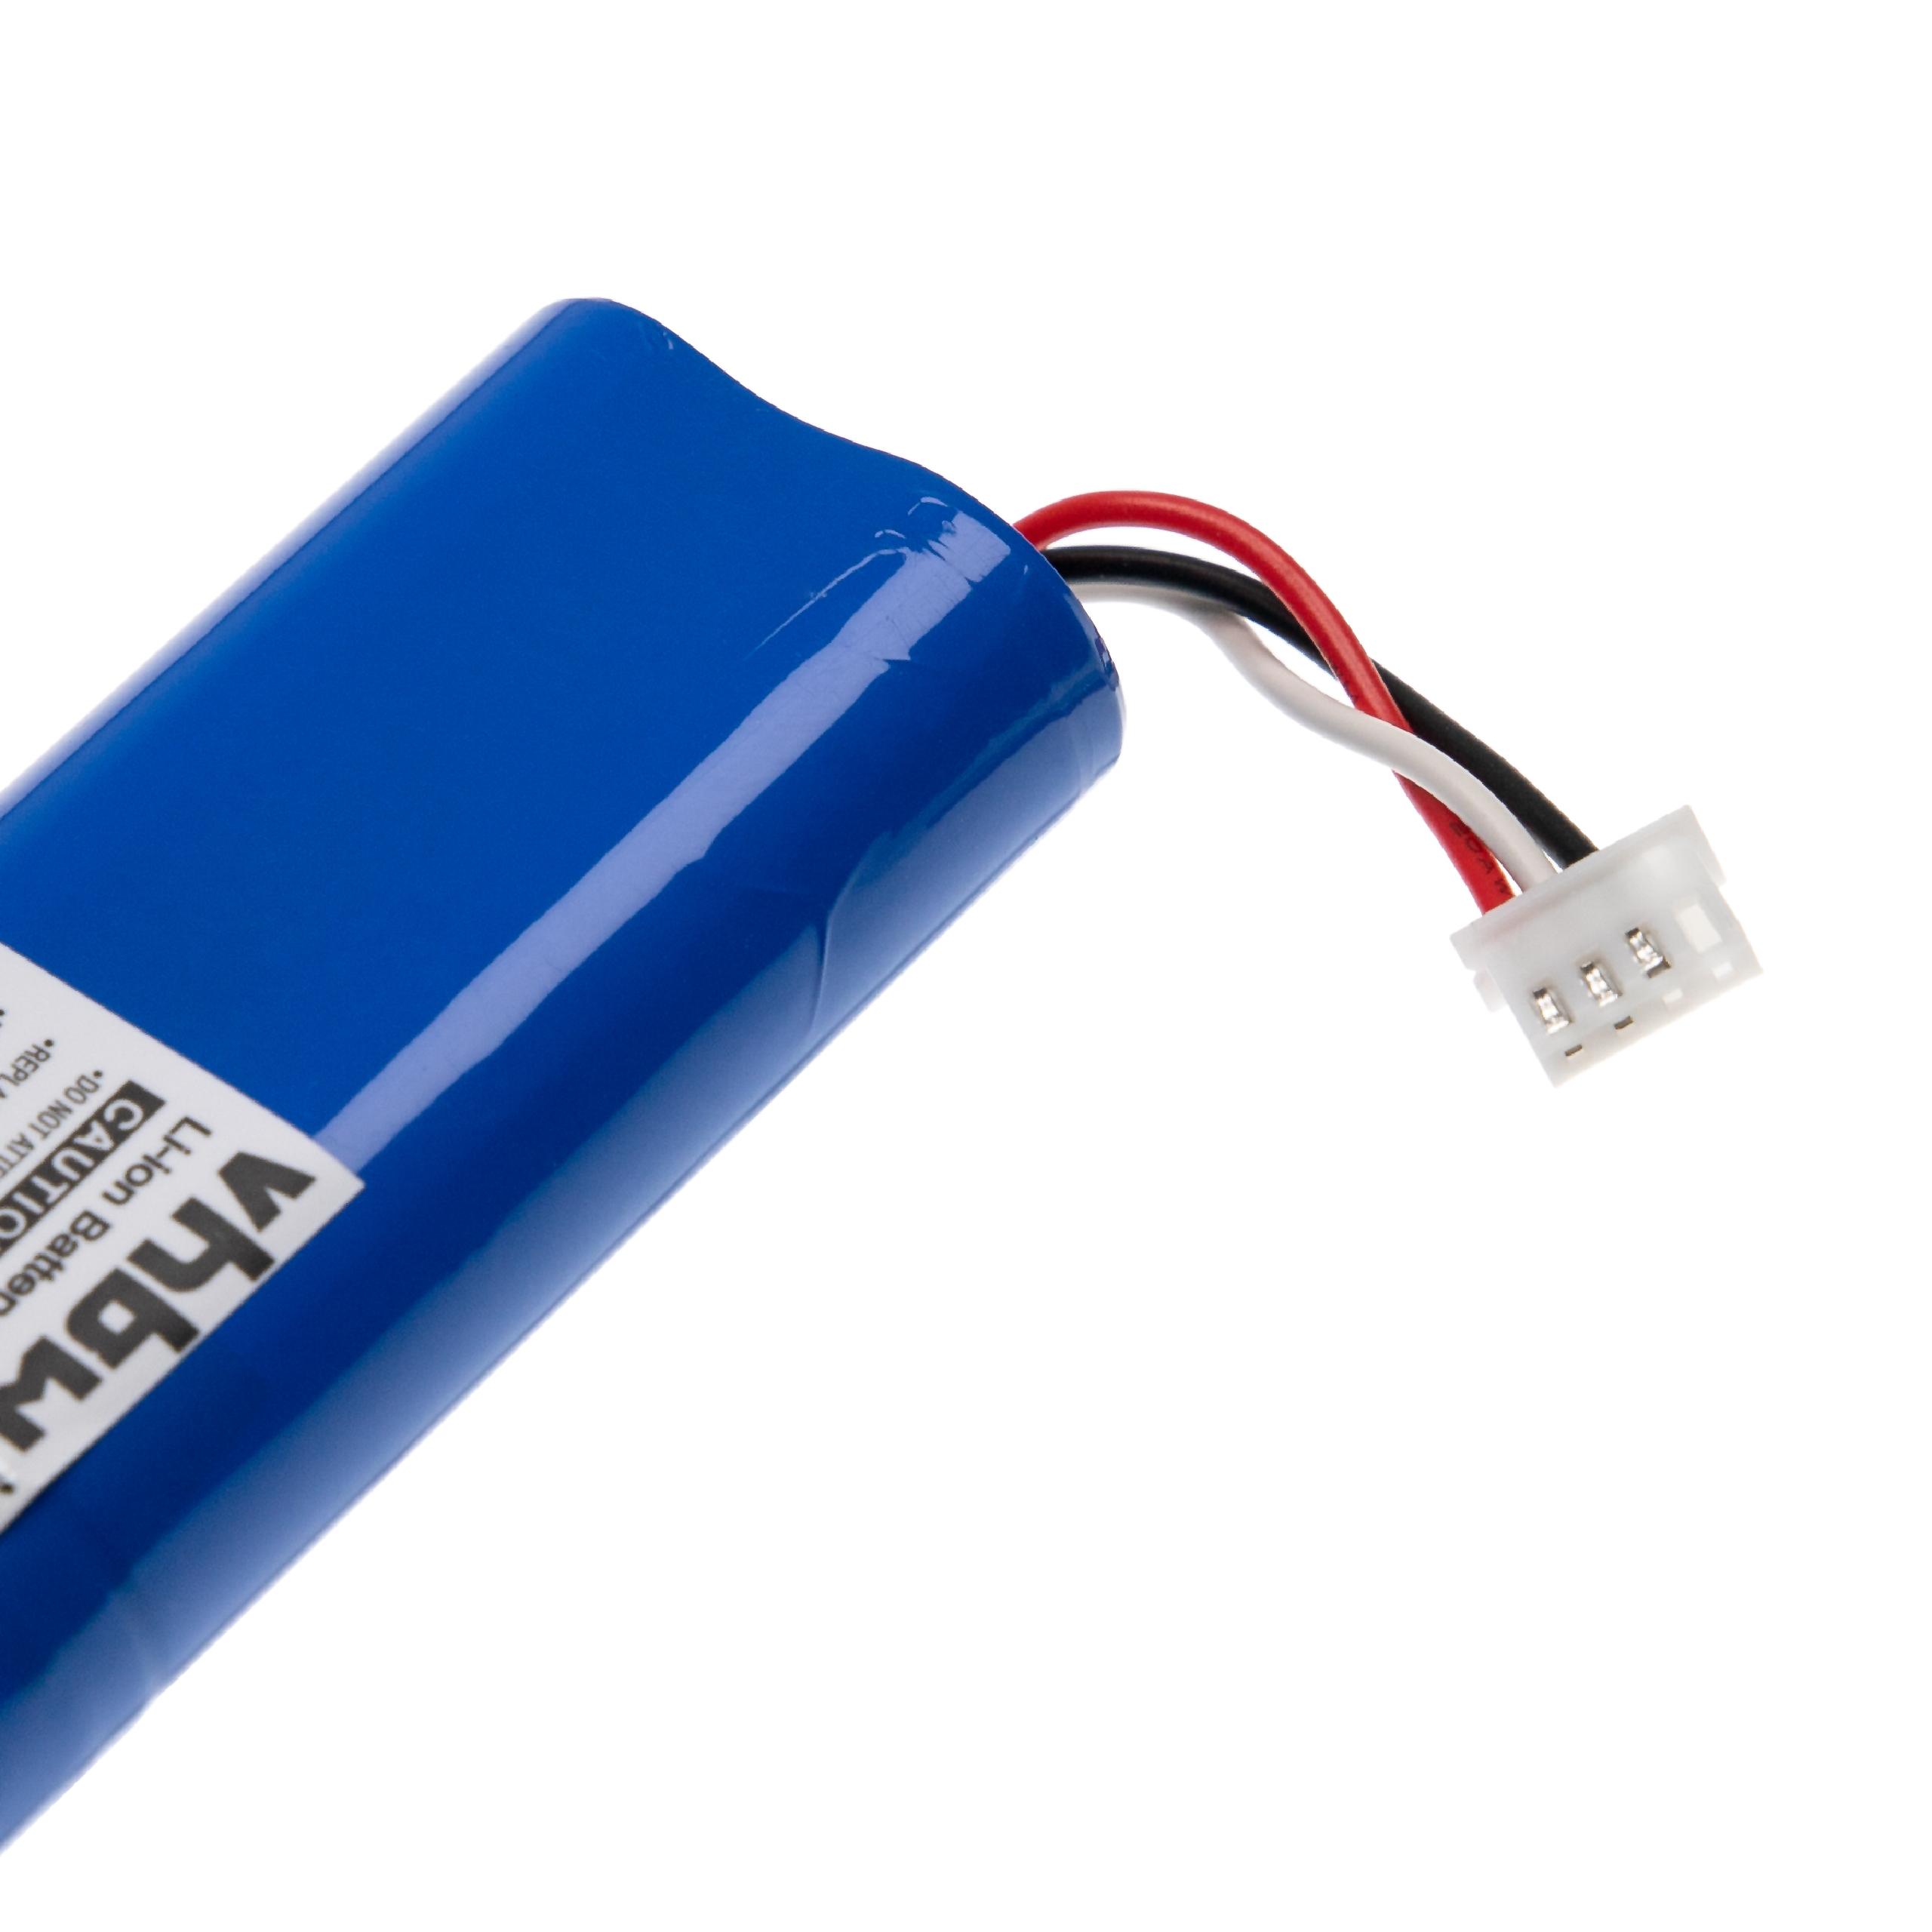 Batterie remplace Ecovacs S01-LI-148-2600, S01-LI-148-3200 pour robot aspirateur - 2600mAh 14,4V Li-ion